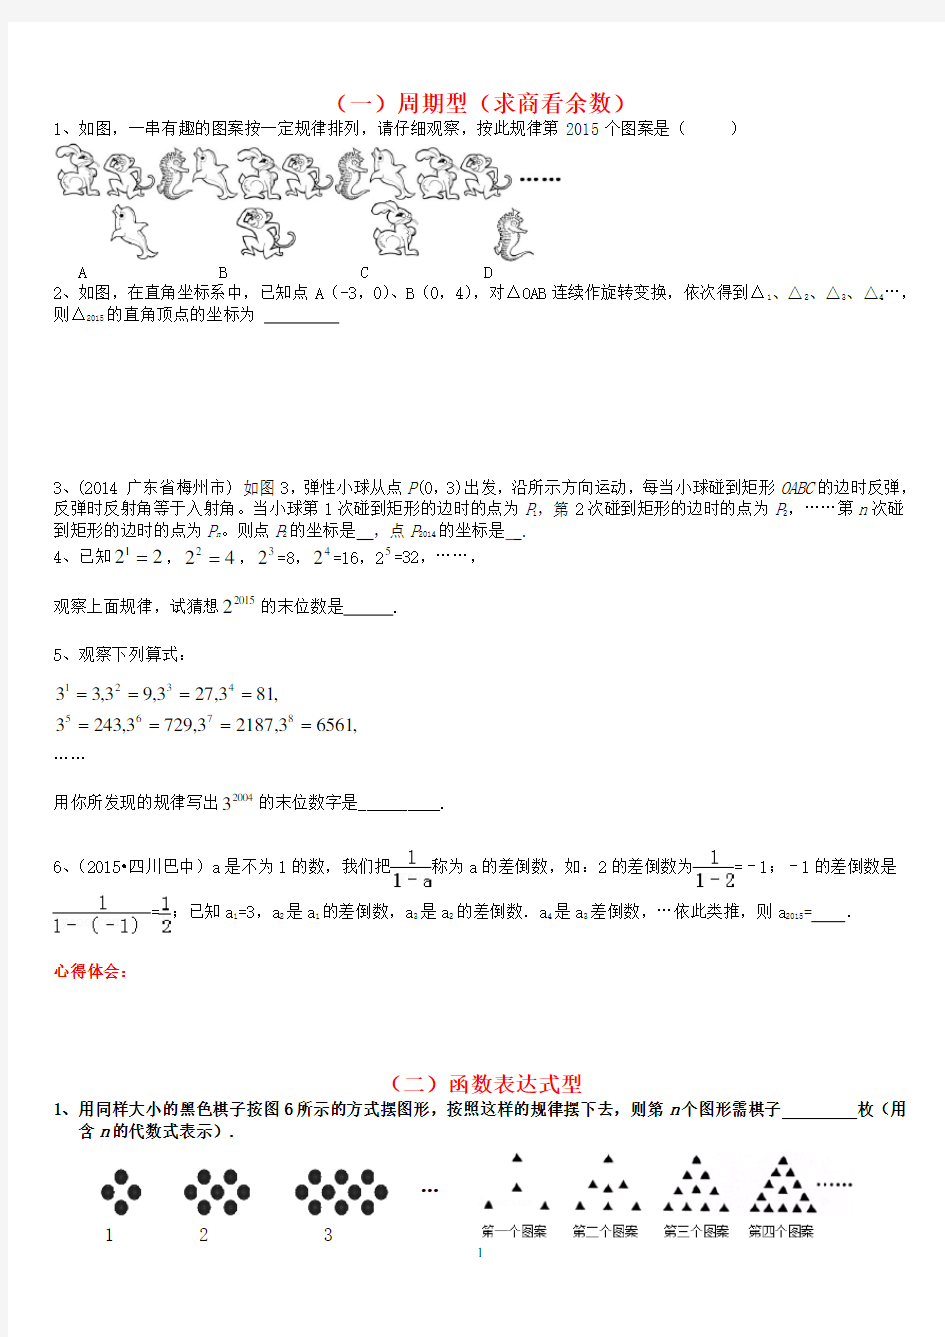 中考数学专题找规律(2020年整理).pdf